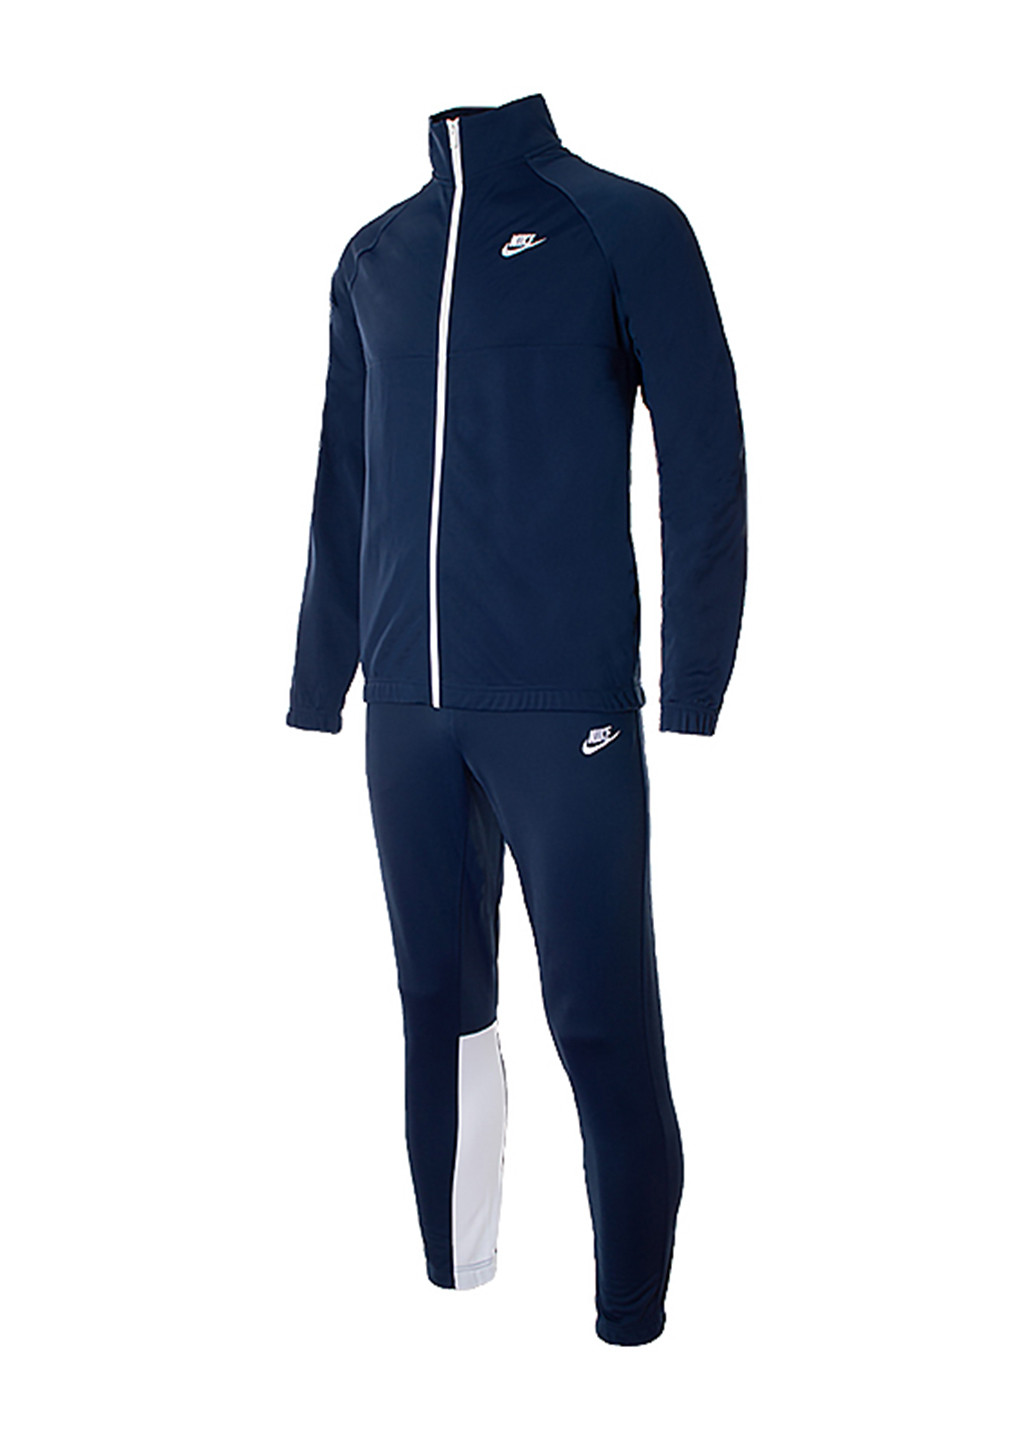 Темно-синий демисезонный костюм (толстовка, брюки) брючный Nike M NSW CE TRK SUIT PK